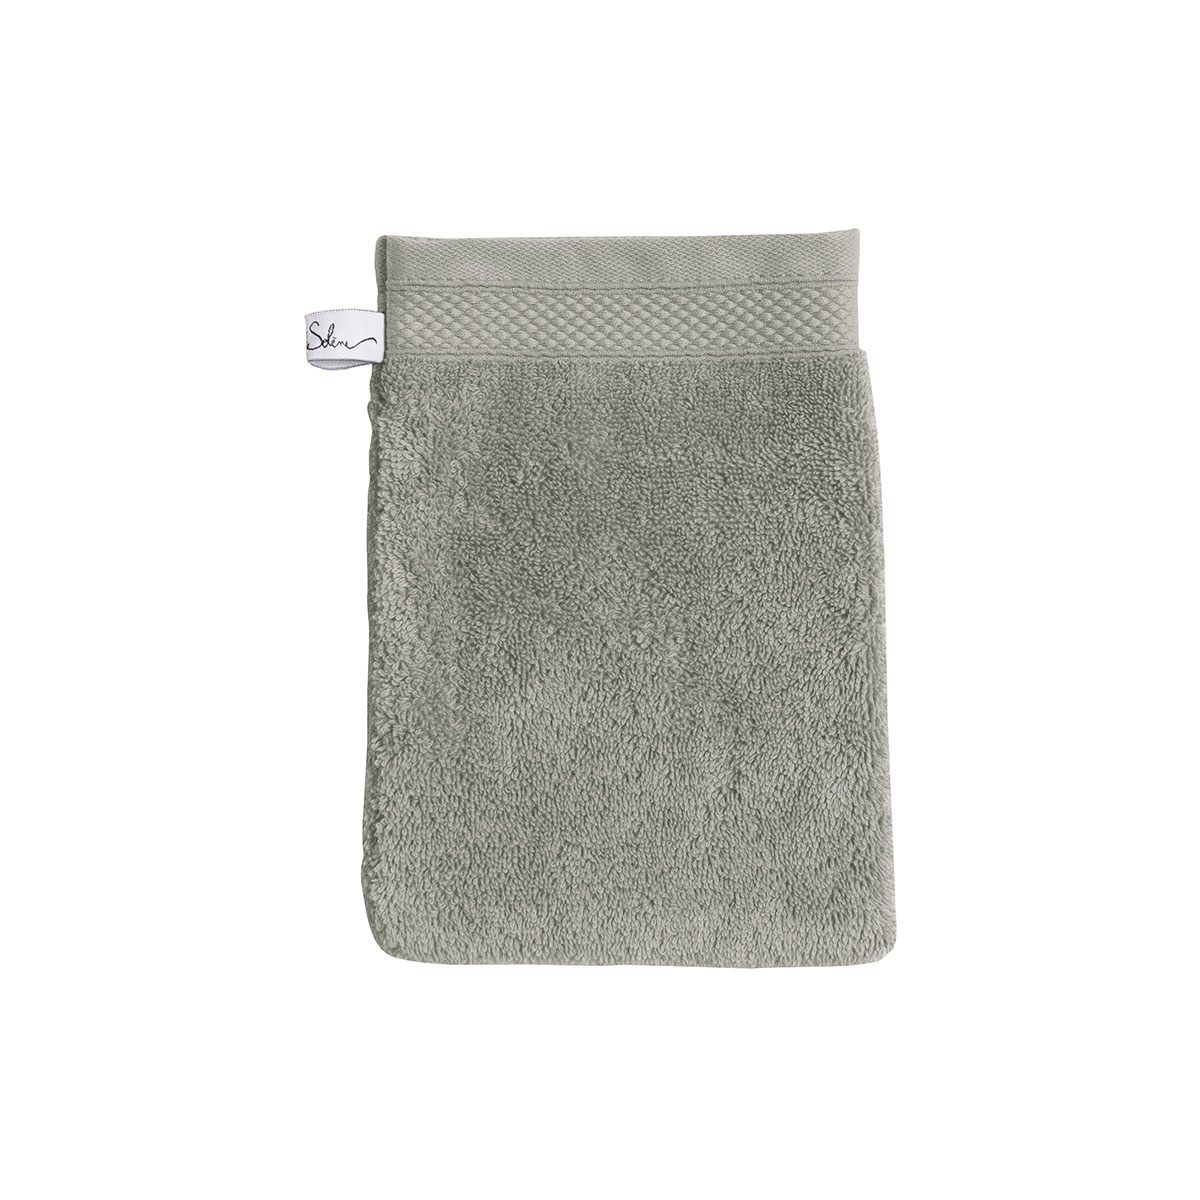 Gant de toilette coton 16x22 cm lichen